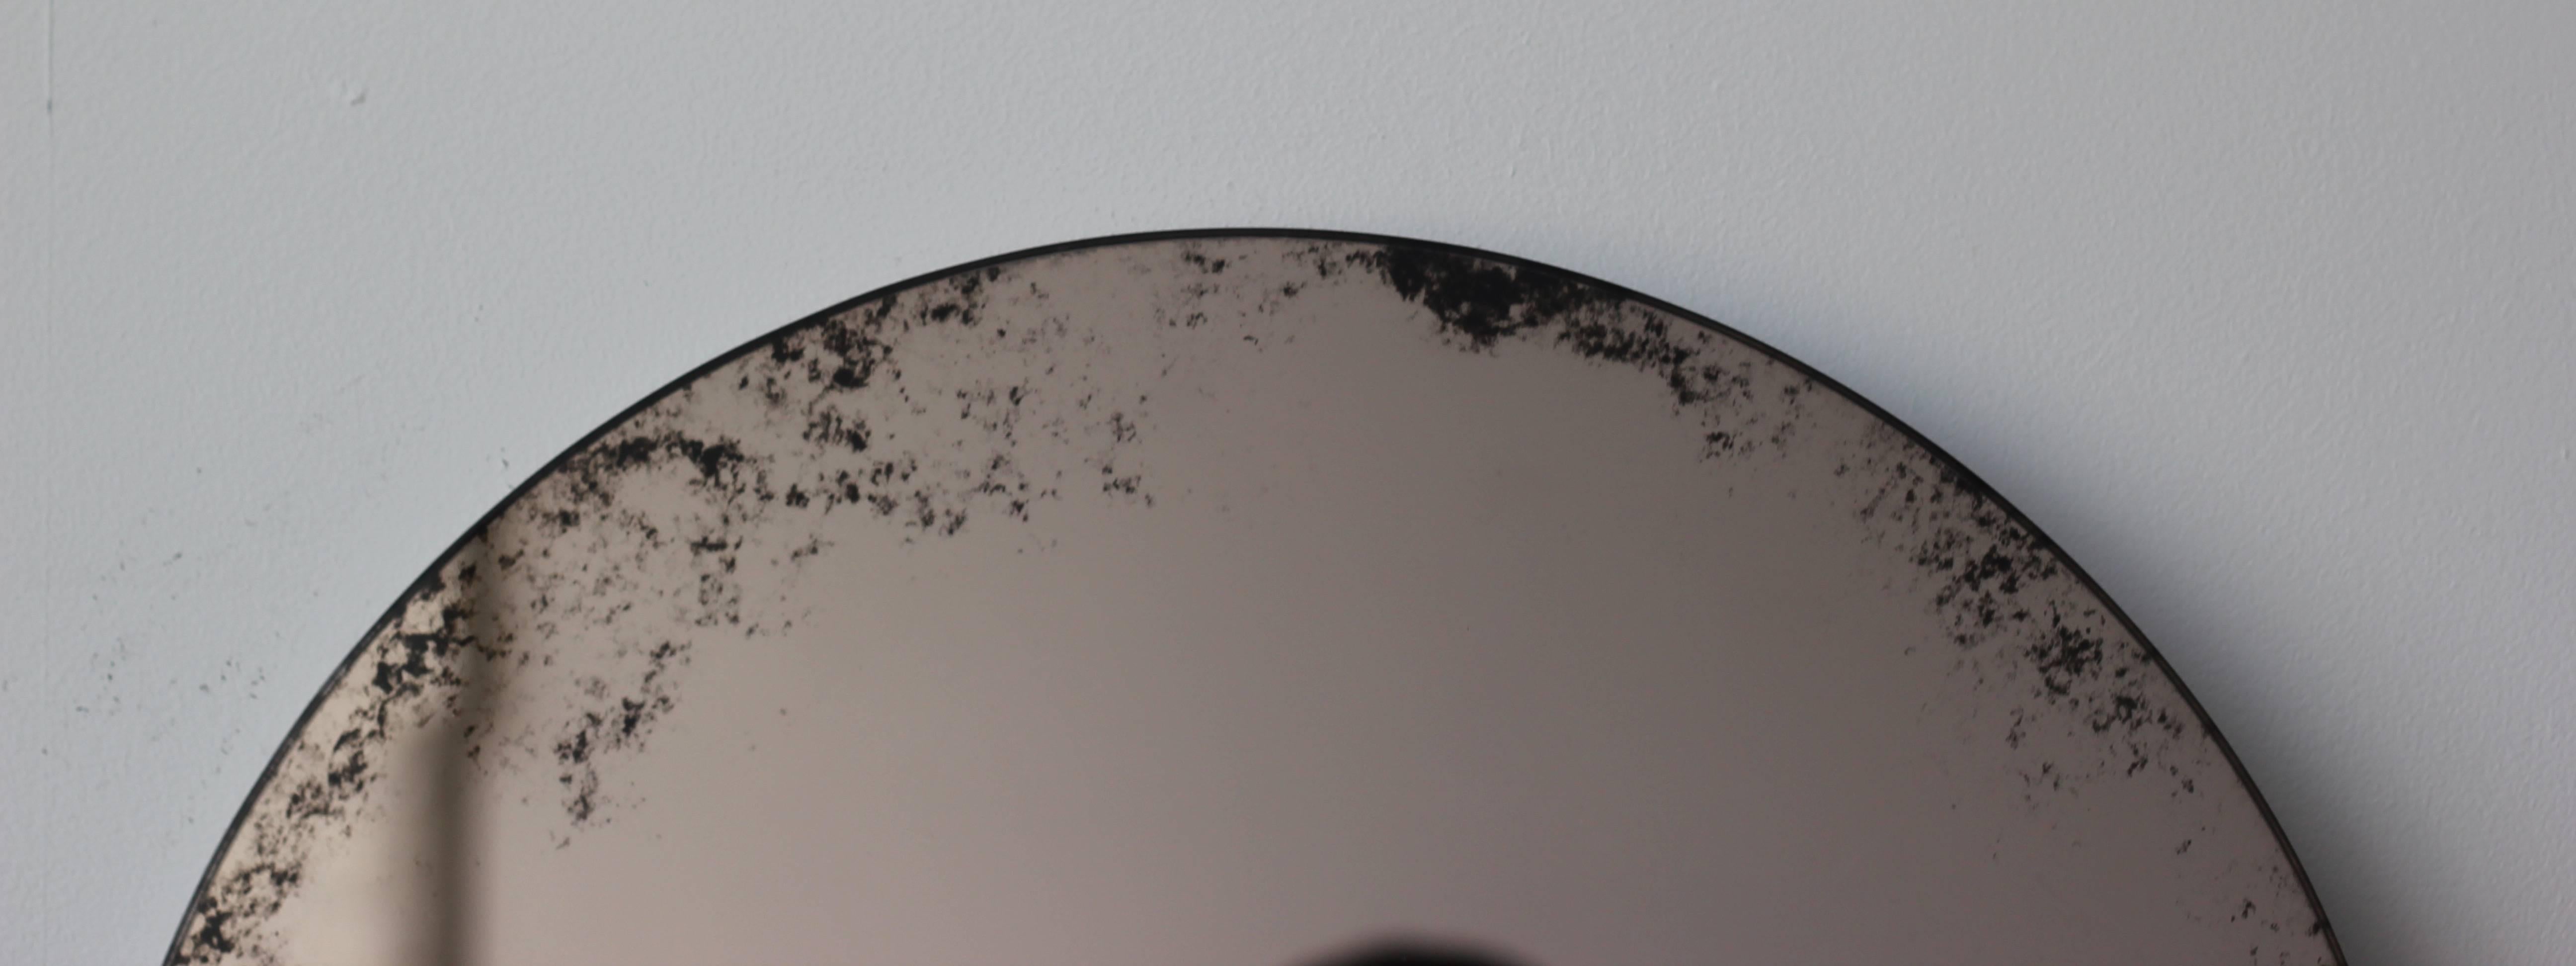 Orbis Round Mirror Bronze Tinted with Black Antiqued Finish dia. 40cm / 15.8